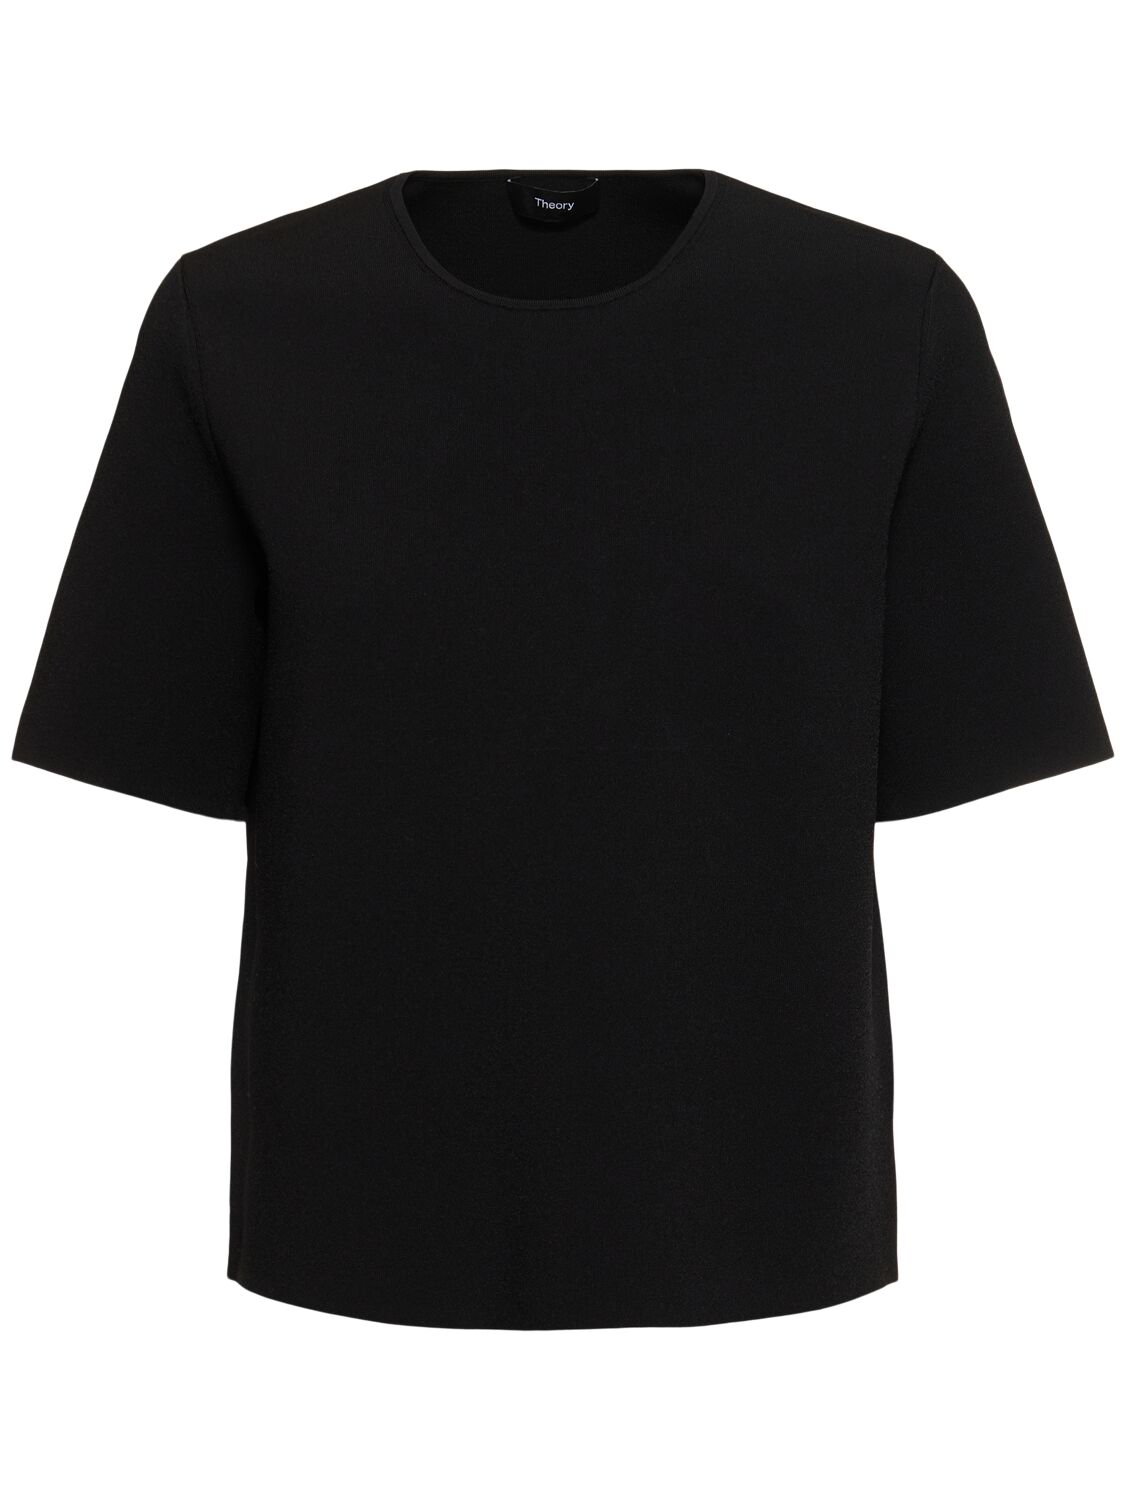 Theory 紧凑科技织物绉纱t恤 In Black